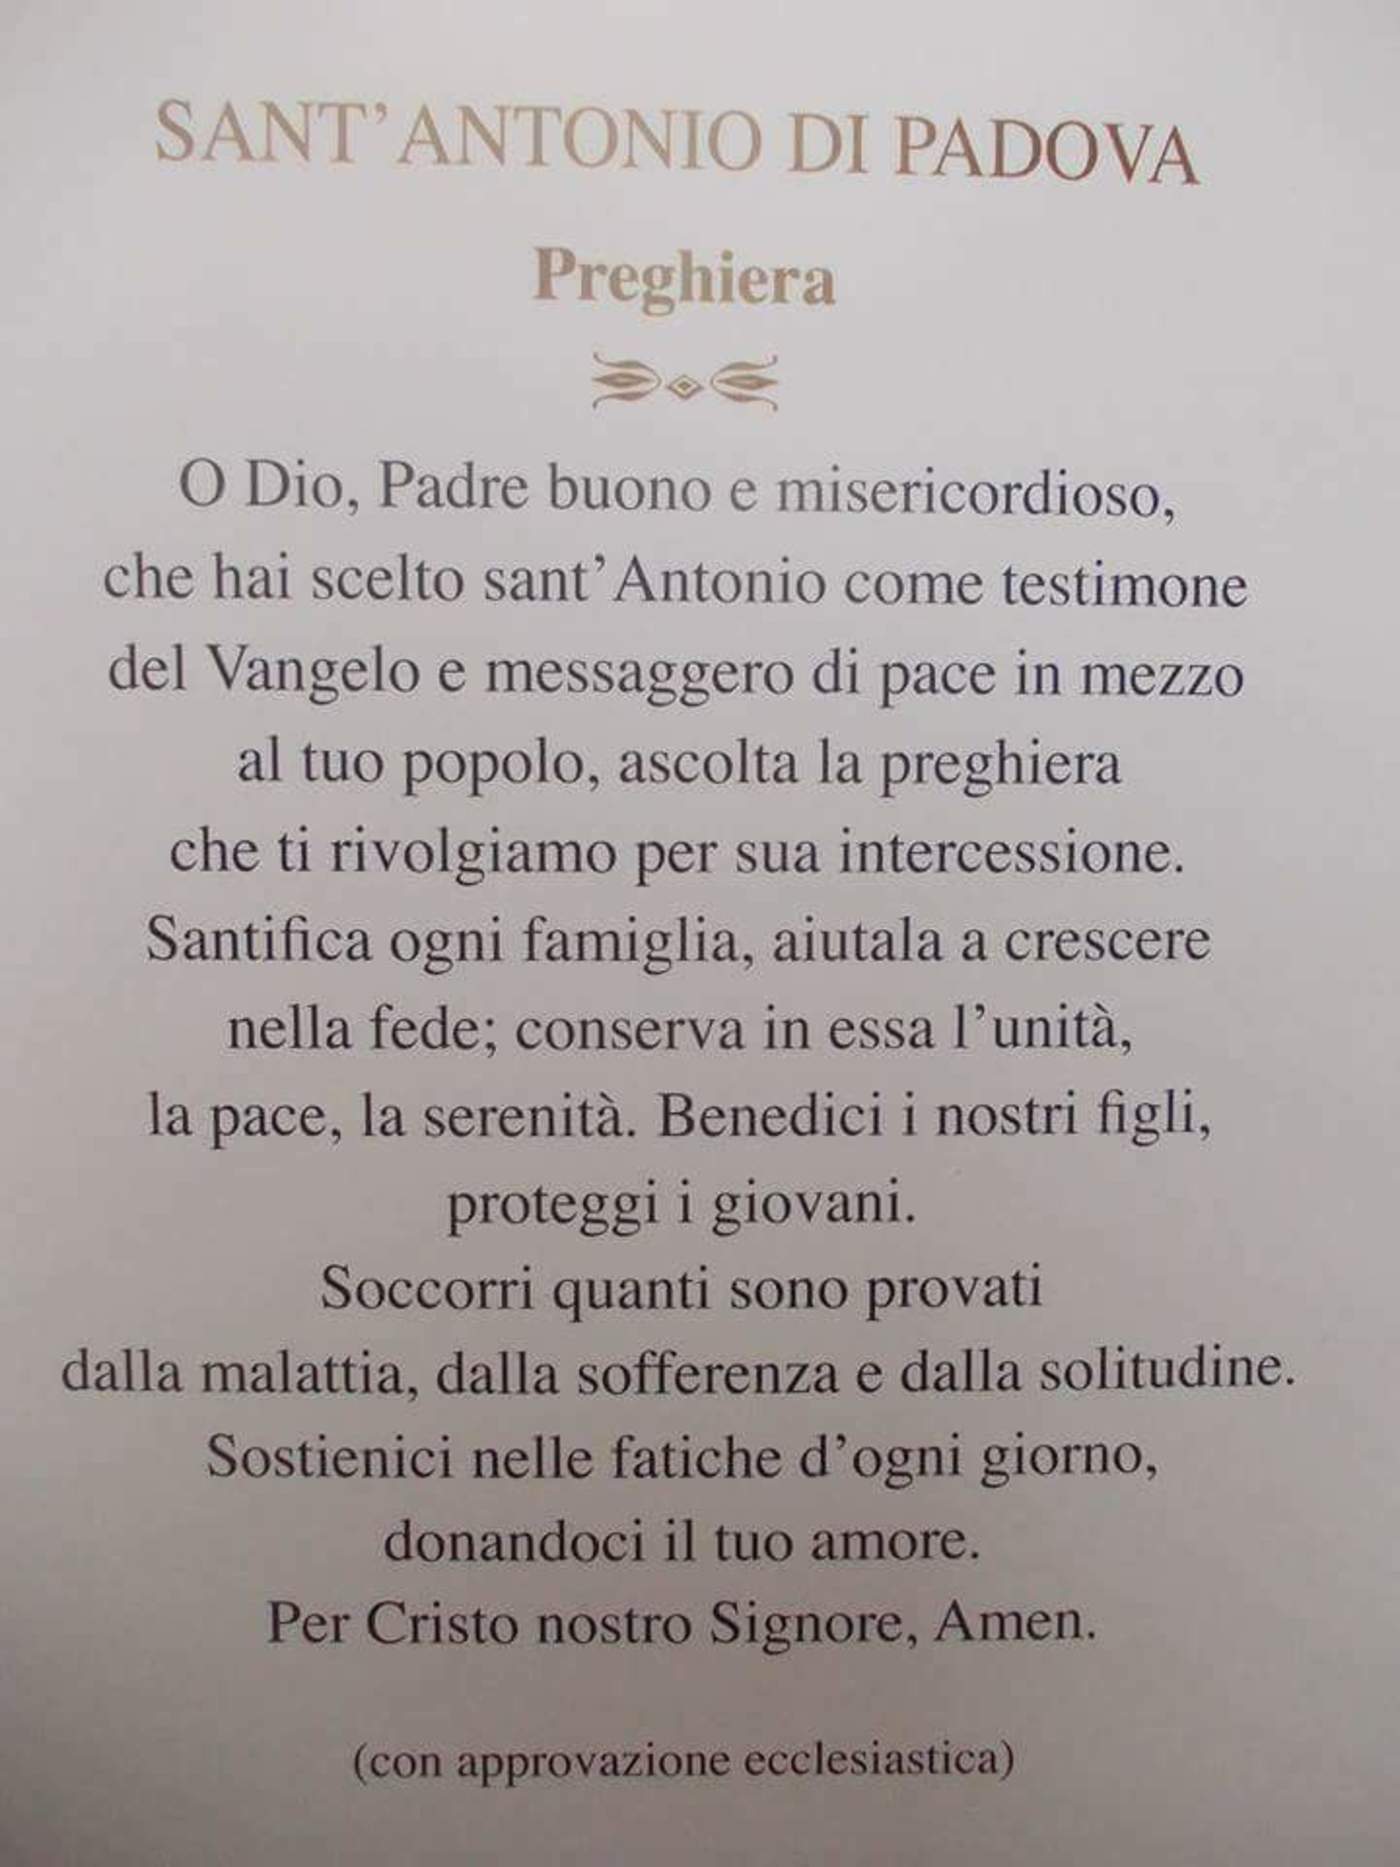 Preghiera a Sant'Antonio da Padova